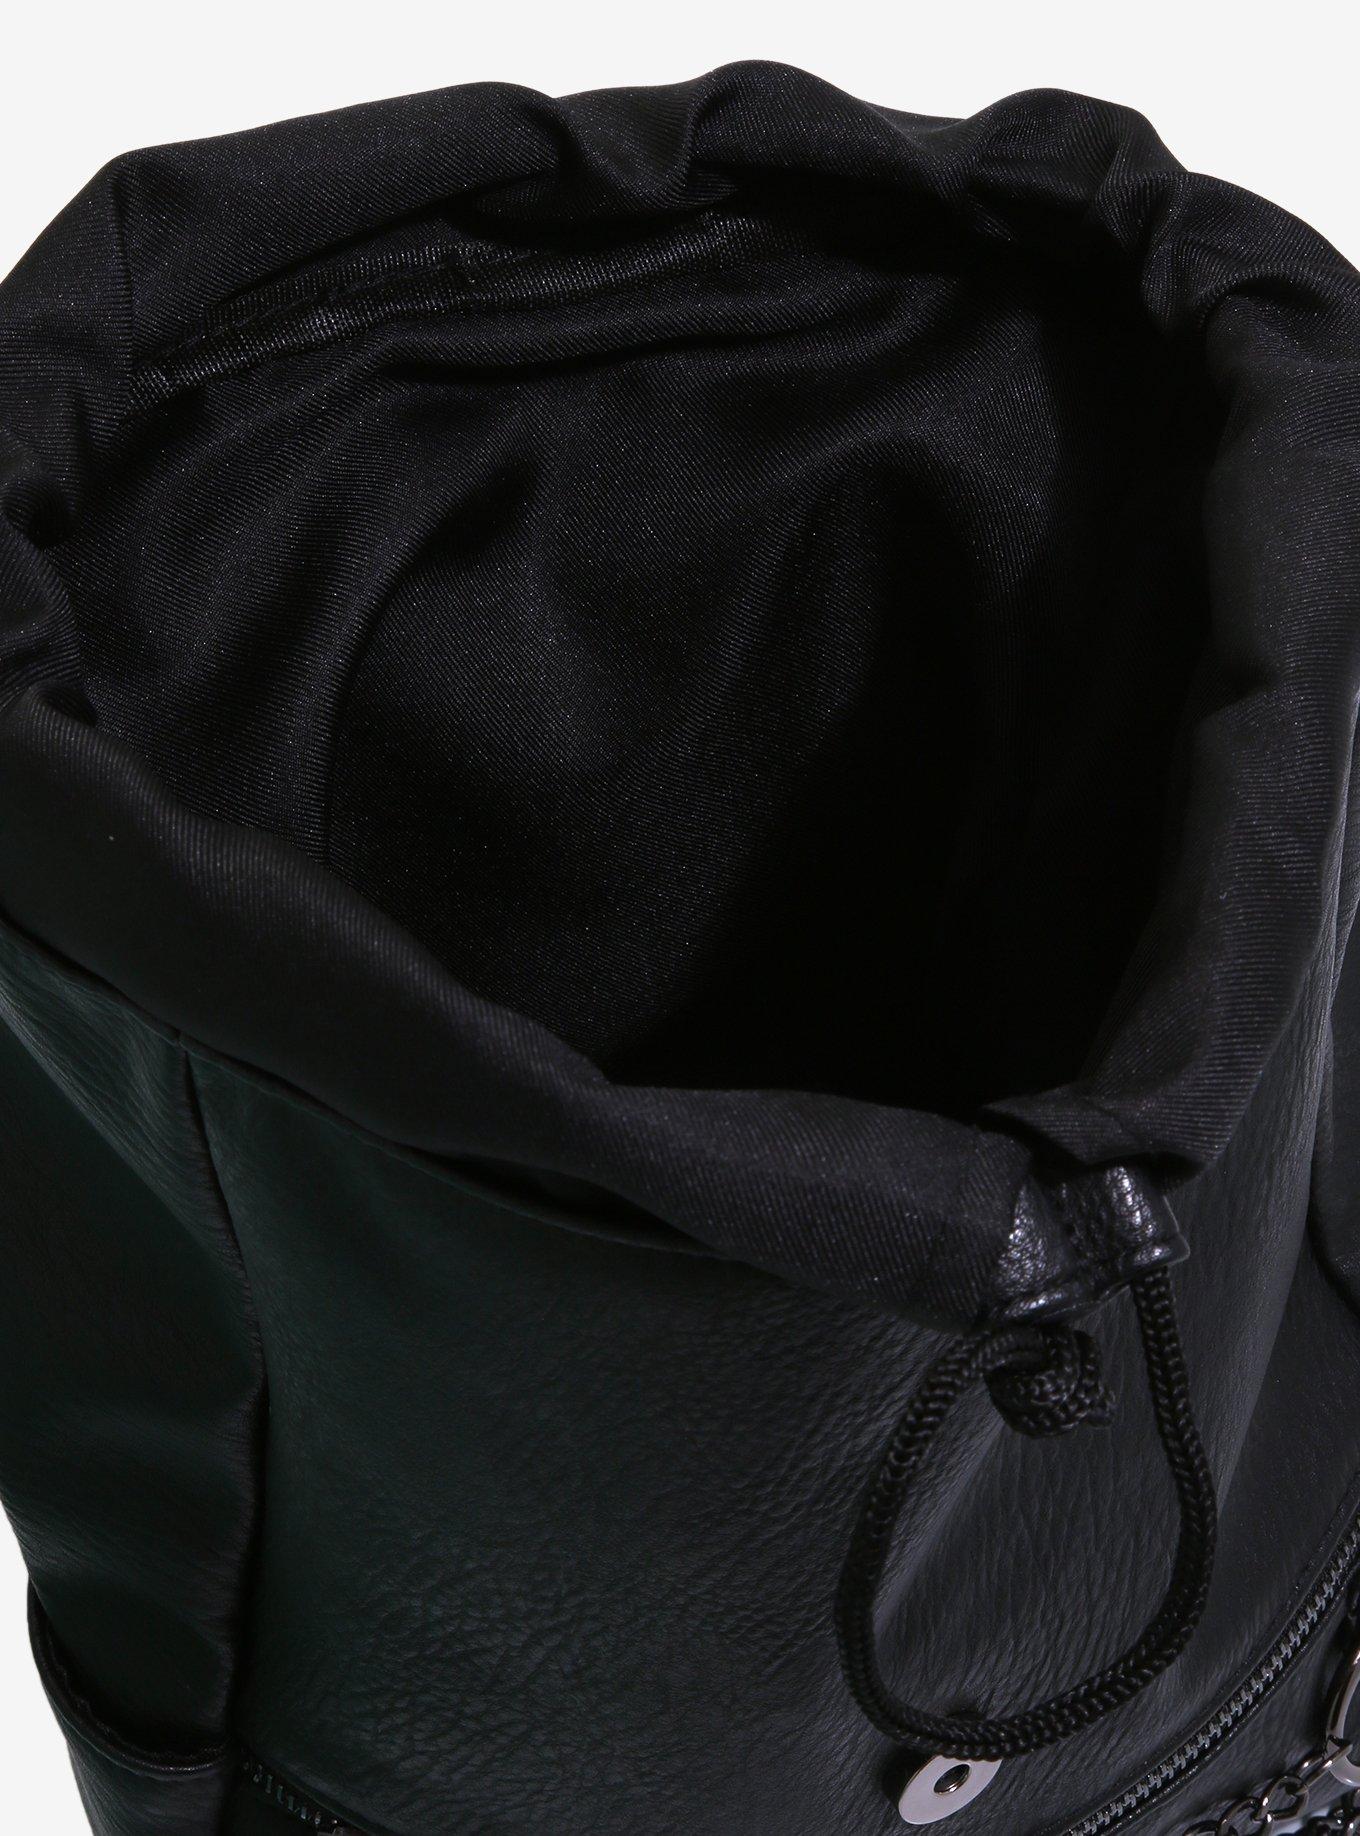 Black Grommet O-Ring Chain Mini Backpack, , alternate